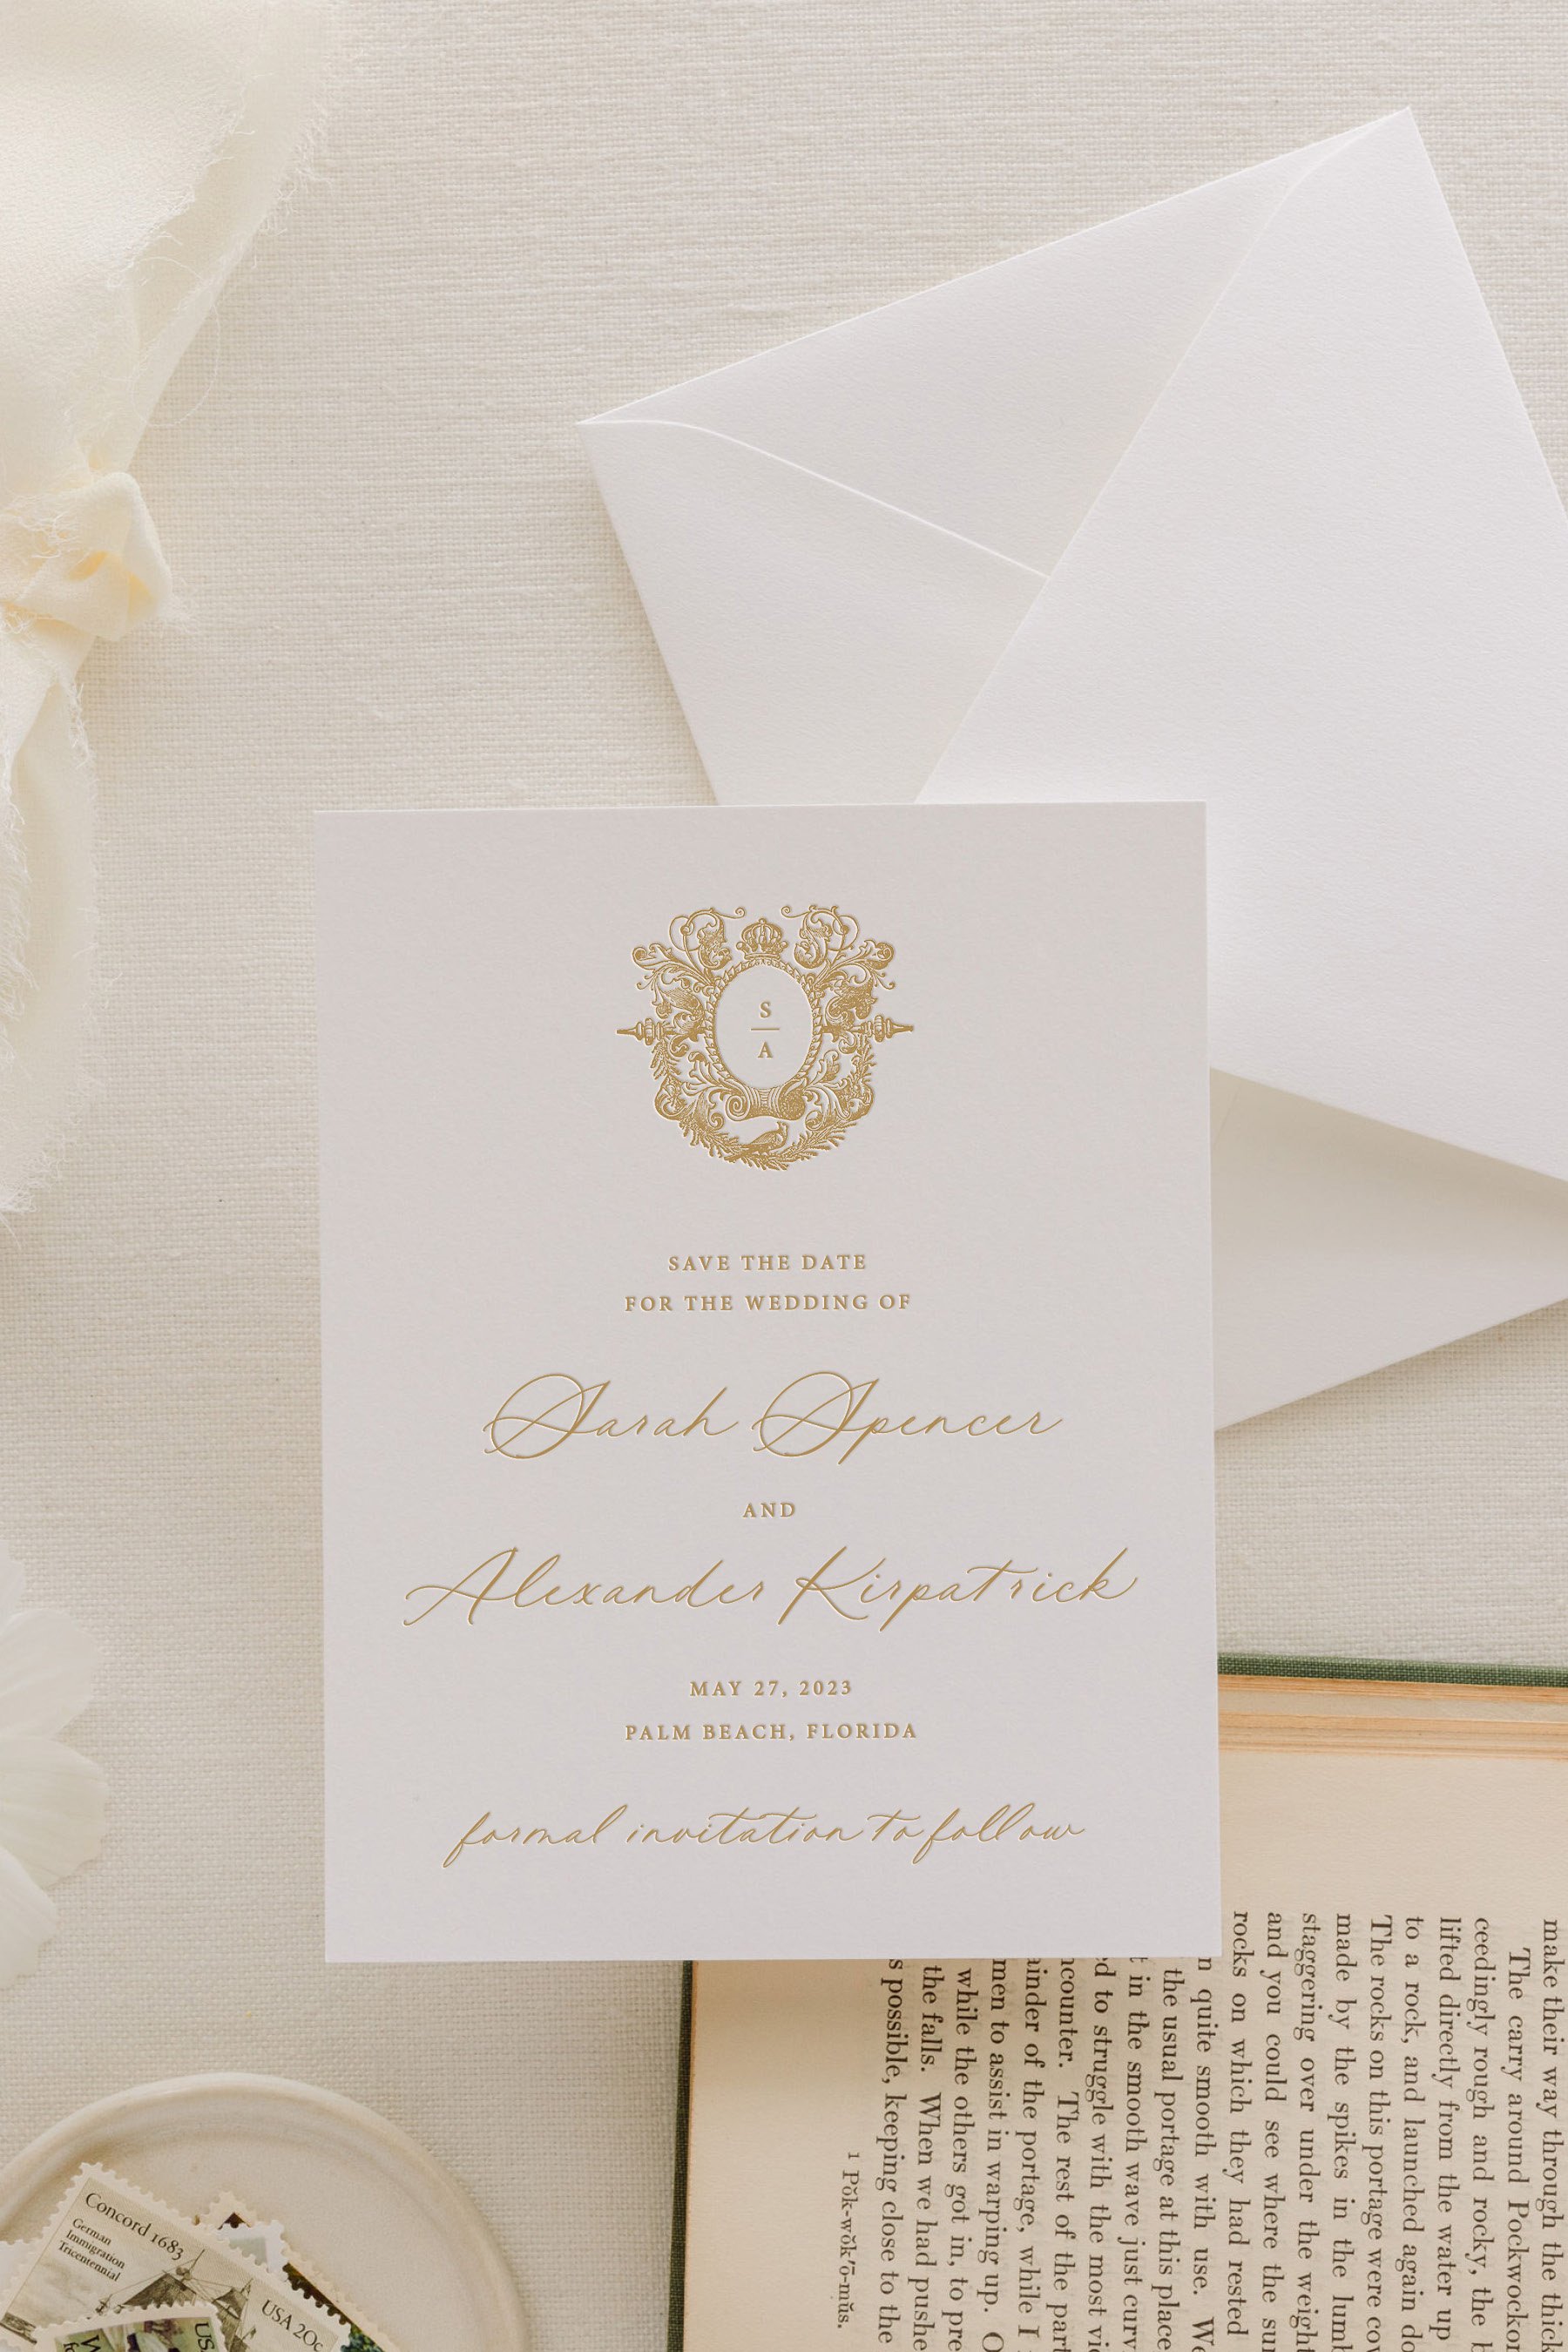 Vellum Wrap Wax Seal Wedding Invitations – All That Glitters